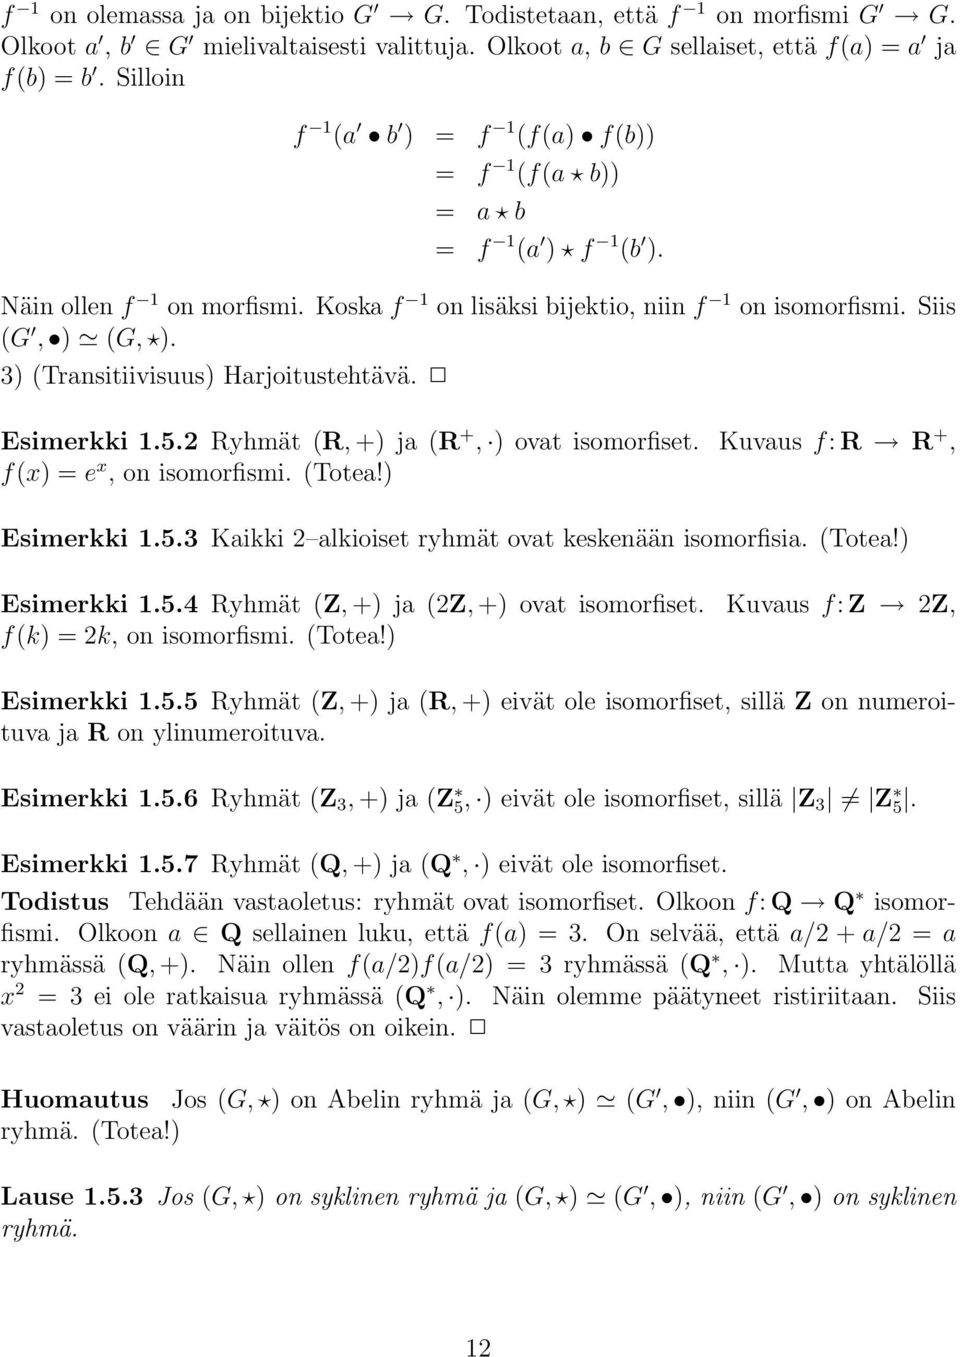 3) (Transitiivisuus) Harjoitustehtävä. Esimerkki 1.5.2 Ryhmät (R, +) ja (R +, ) ovat isomorfiset. Kuvaus f: R R +, f(x) =e x,onisomorfismi. (Totea!) Esimerkki 1.5.3 Kaikki 2 alkioiset ryhmät ovat keskenään isomorfisia.